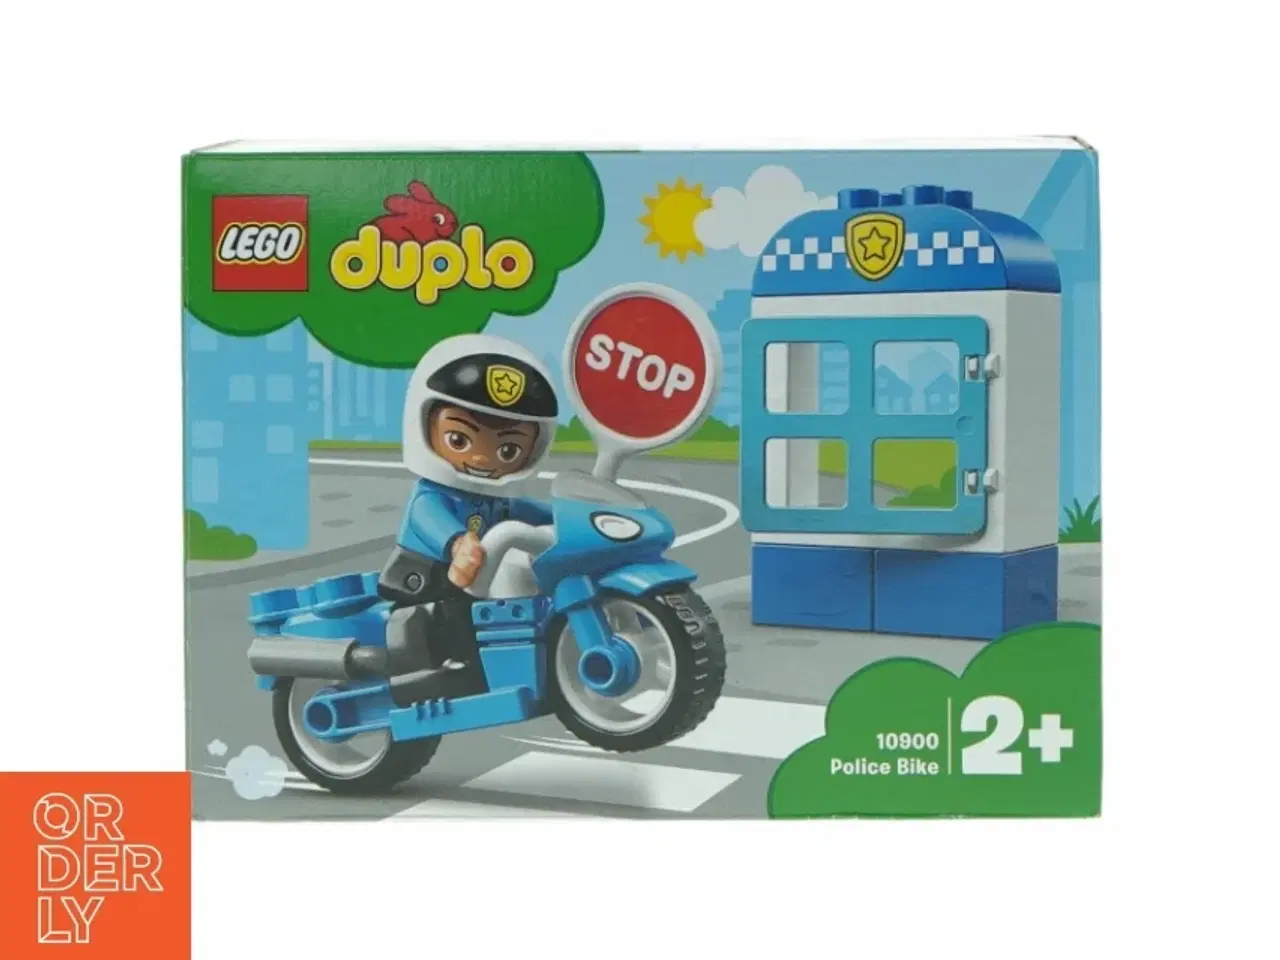 Billede 1 - Dubu politimand (modelnummer 1 0 9 0 0)50 fra Lego (str. 13 cm x 20 cm x 6 cm)